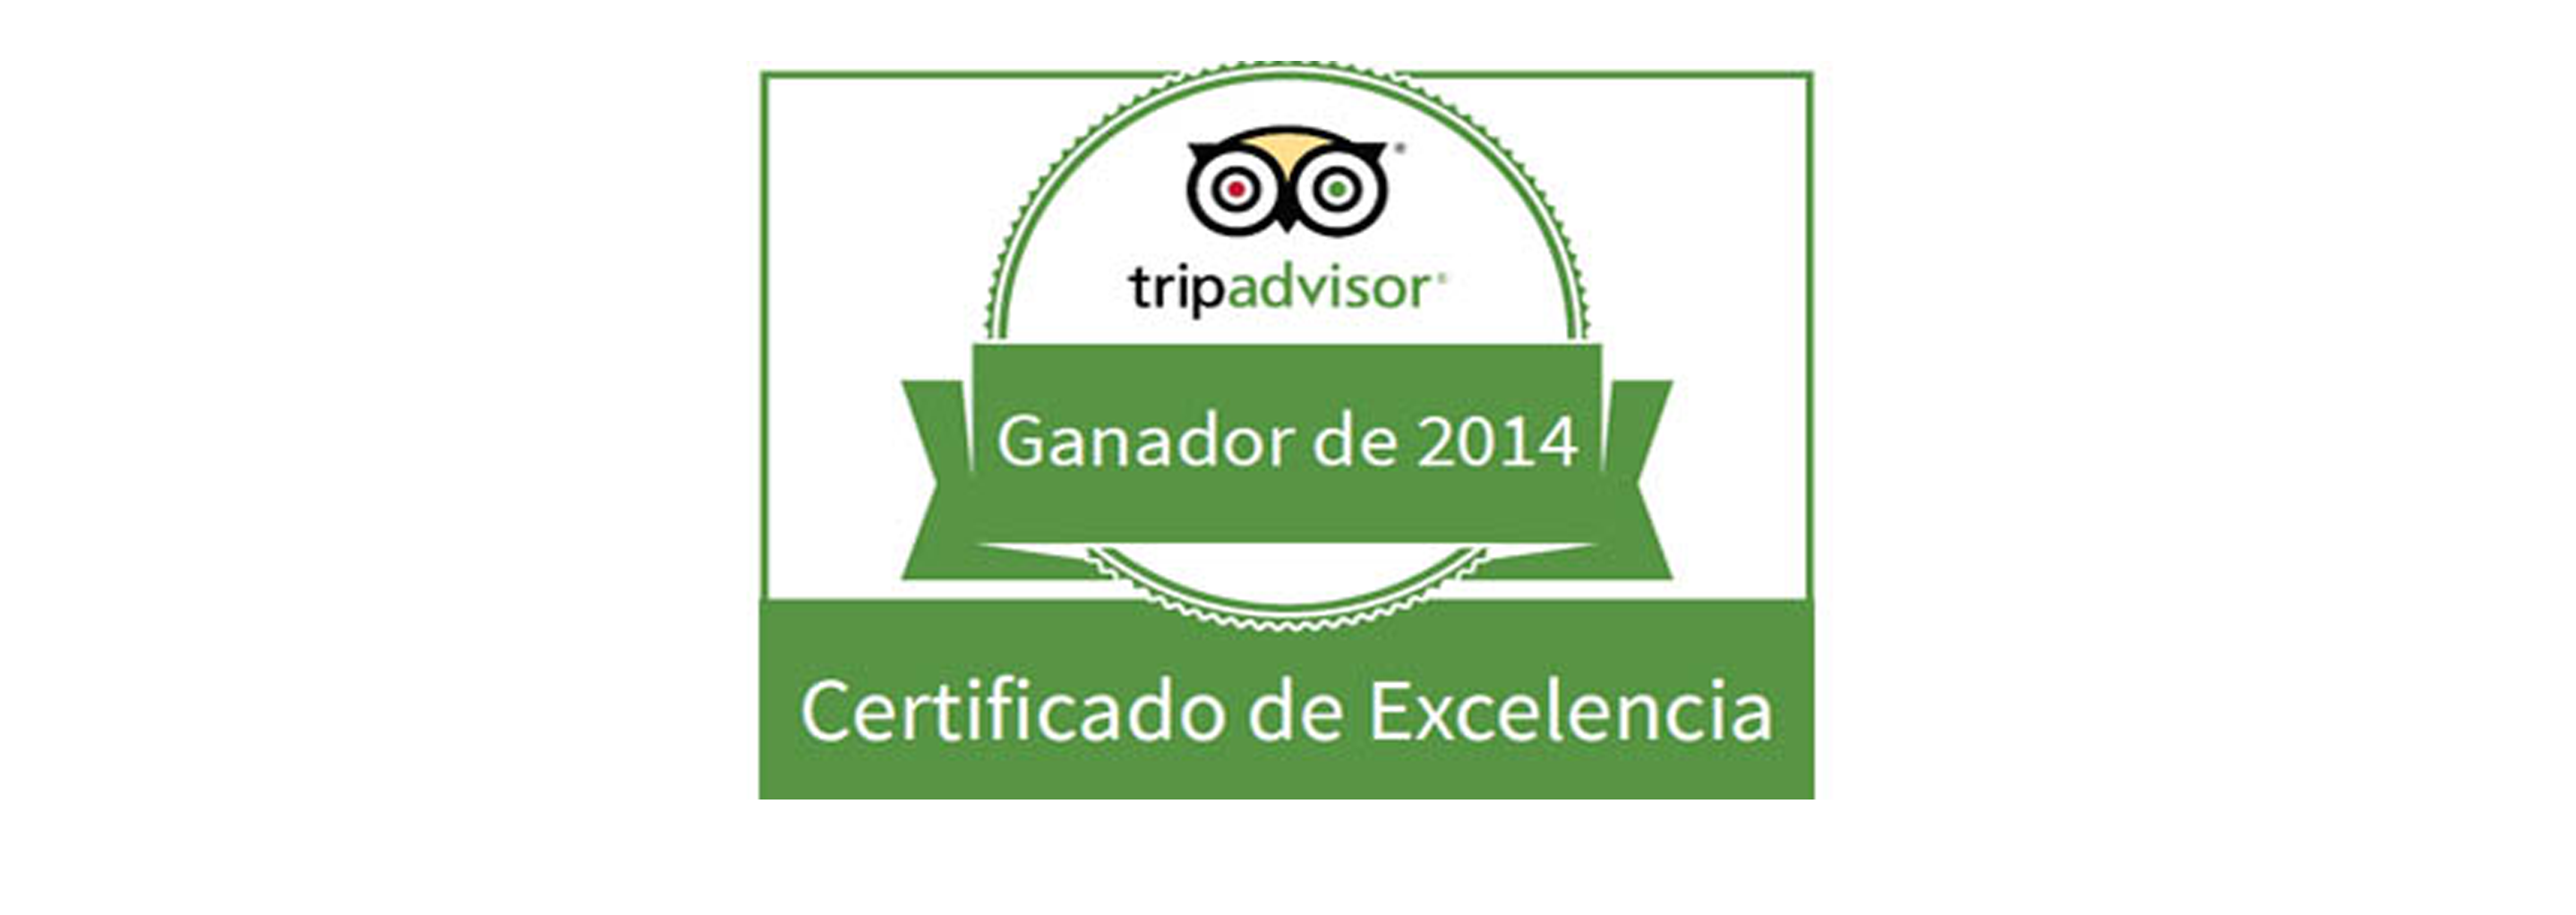 Tripadvisor nos otorga el Certificado de Excelencia 2014